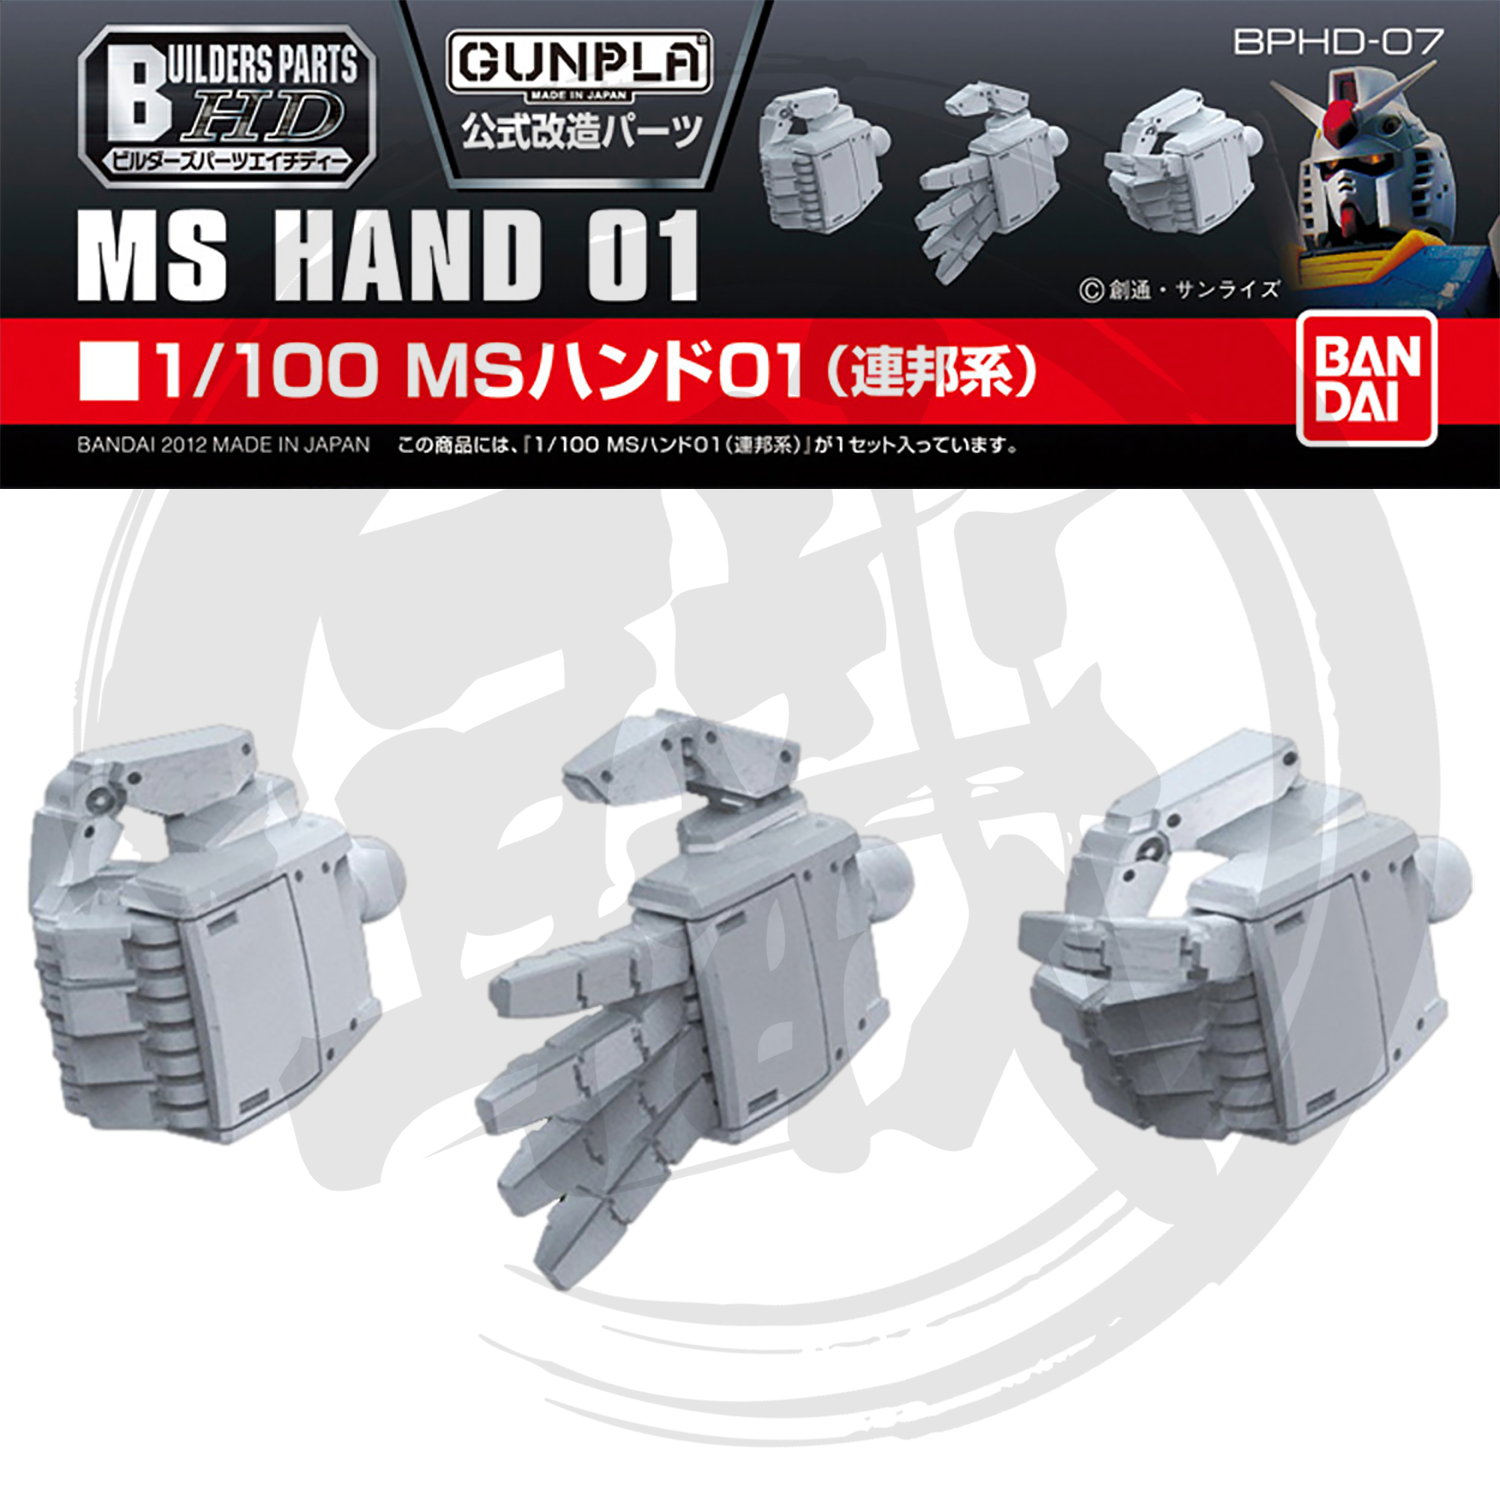 MS Hand 01 [Federation] [1/100 Scale] [BPHD-07] - ShokuninGunpla